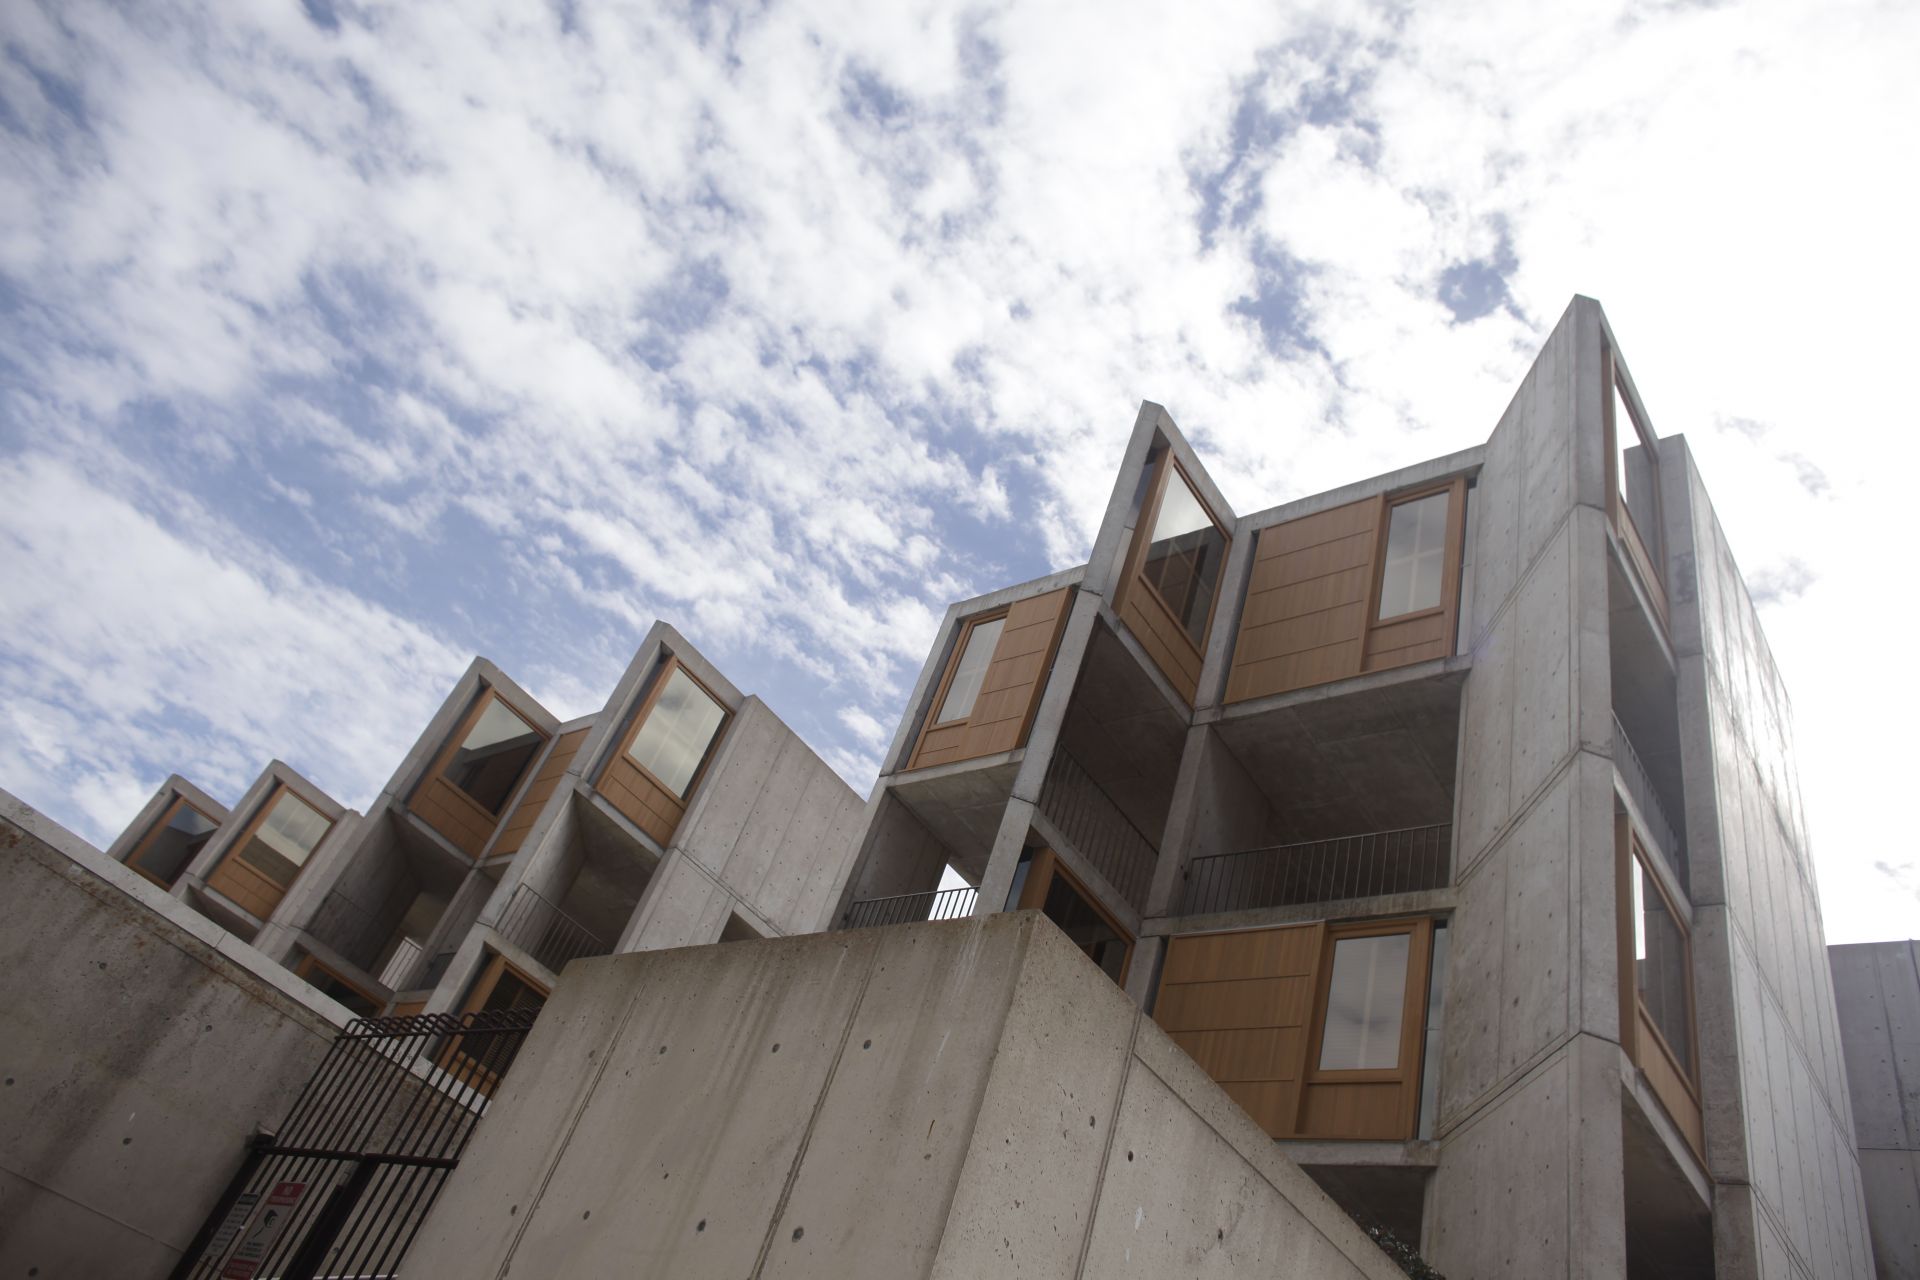 サンディエゴのルイス カーンによる名作建築 ソーク研究所 が彫刻のように美しい Oh My ブログ